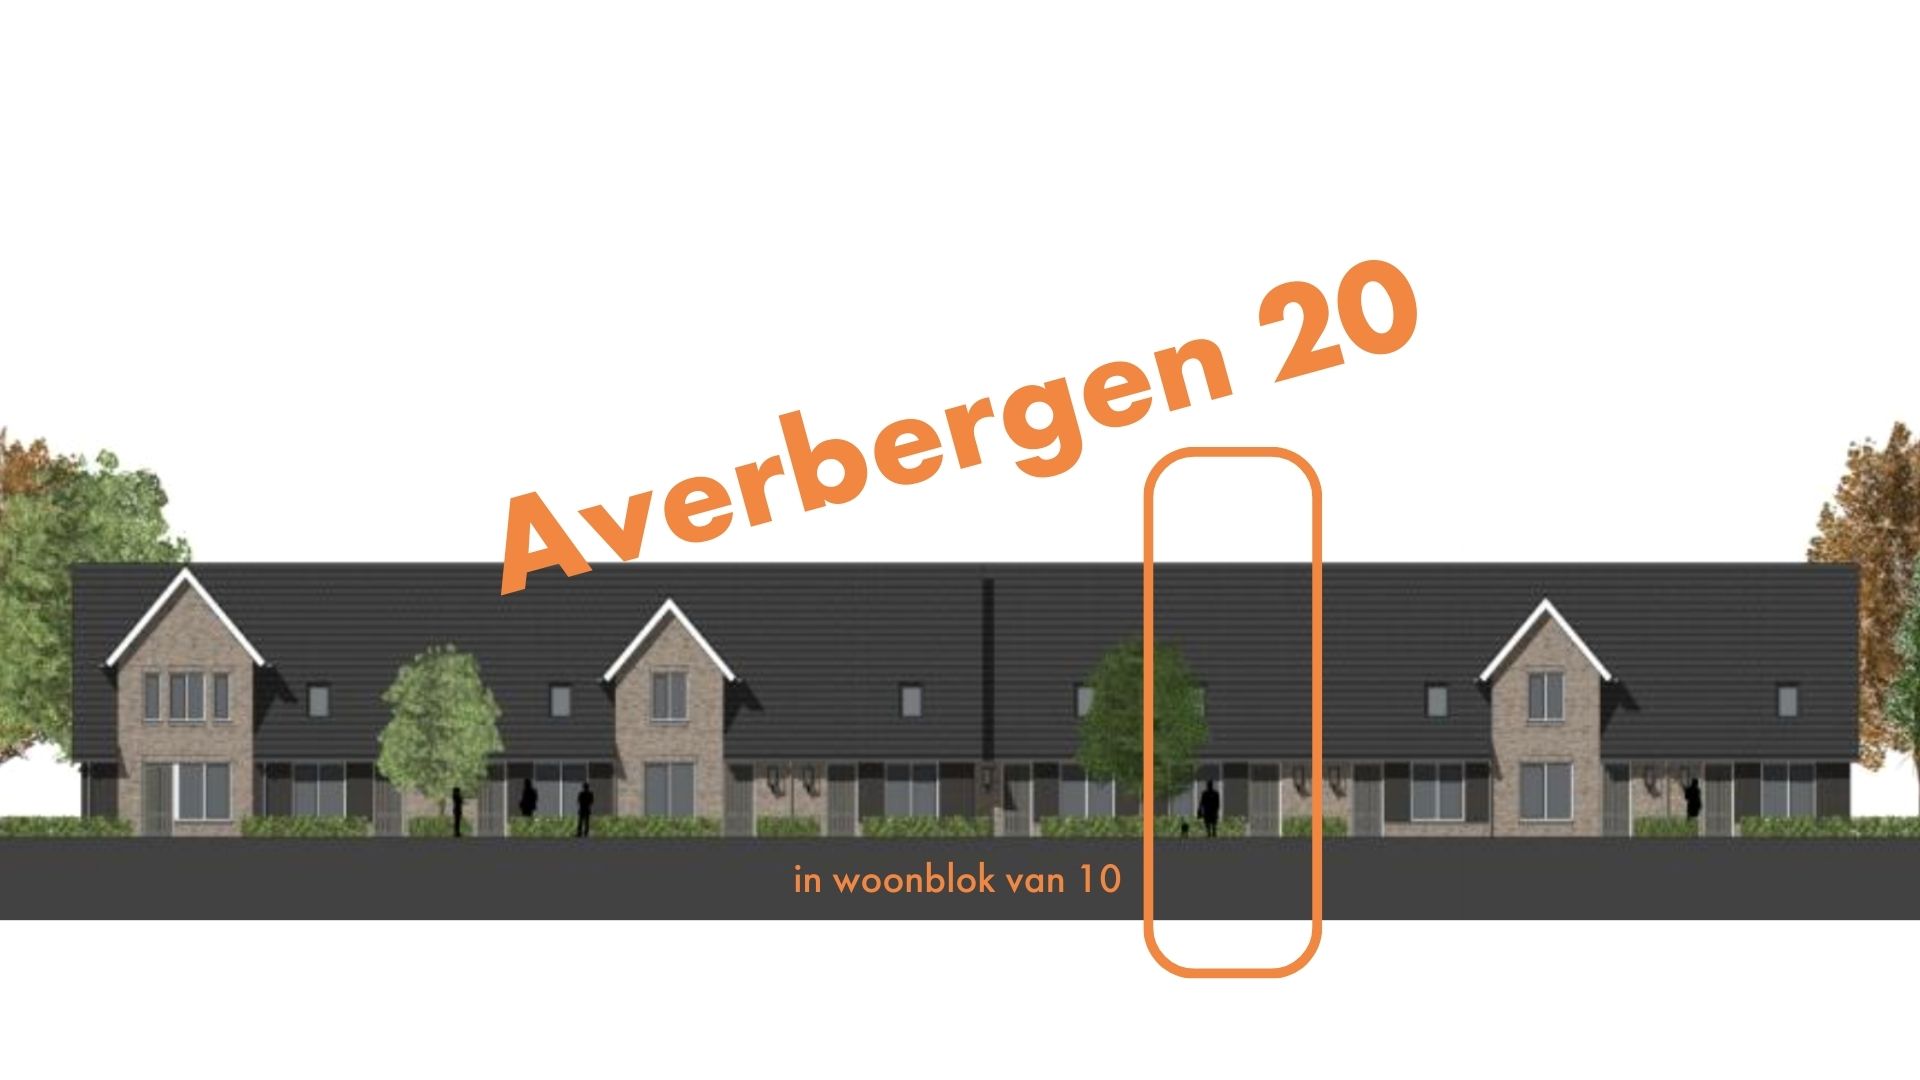 Averbergen 20